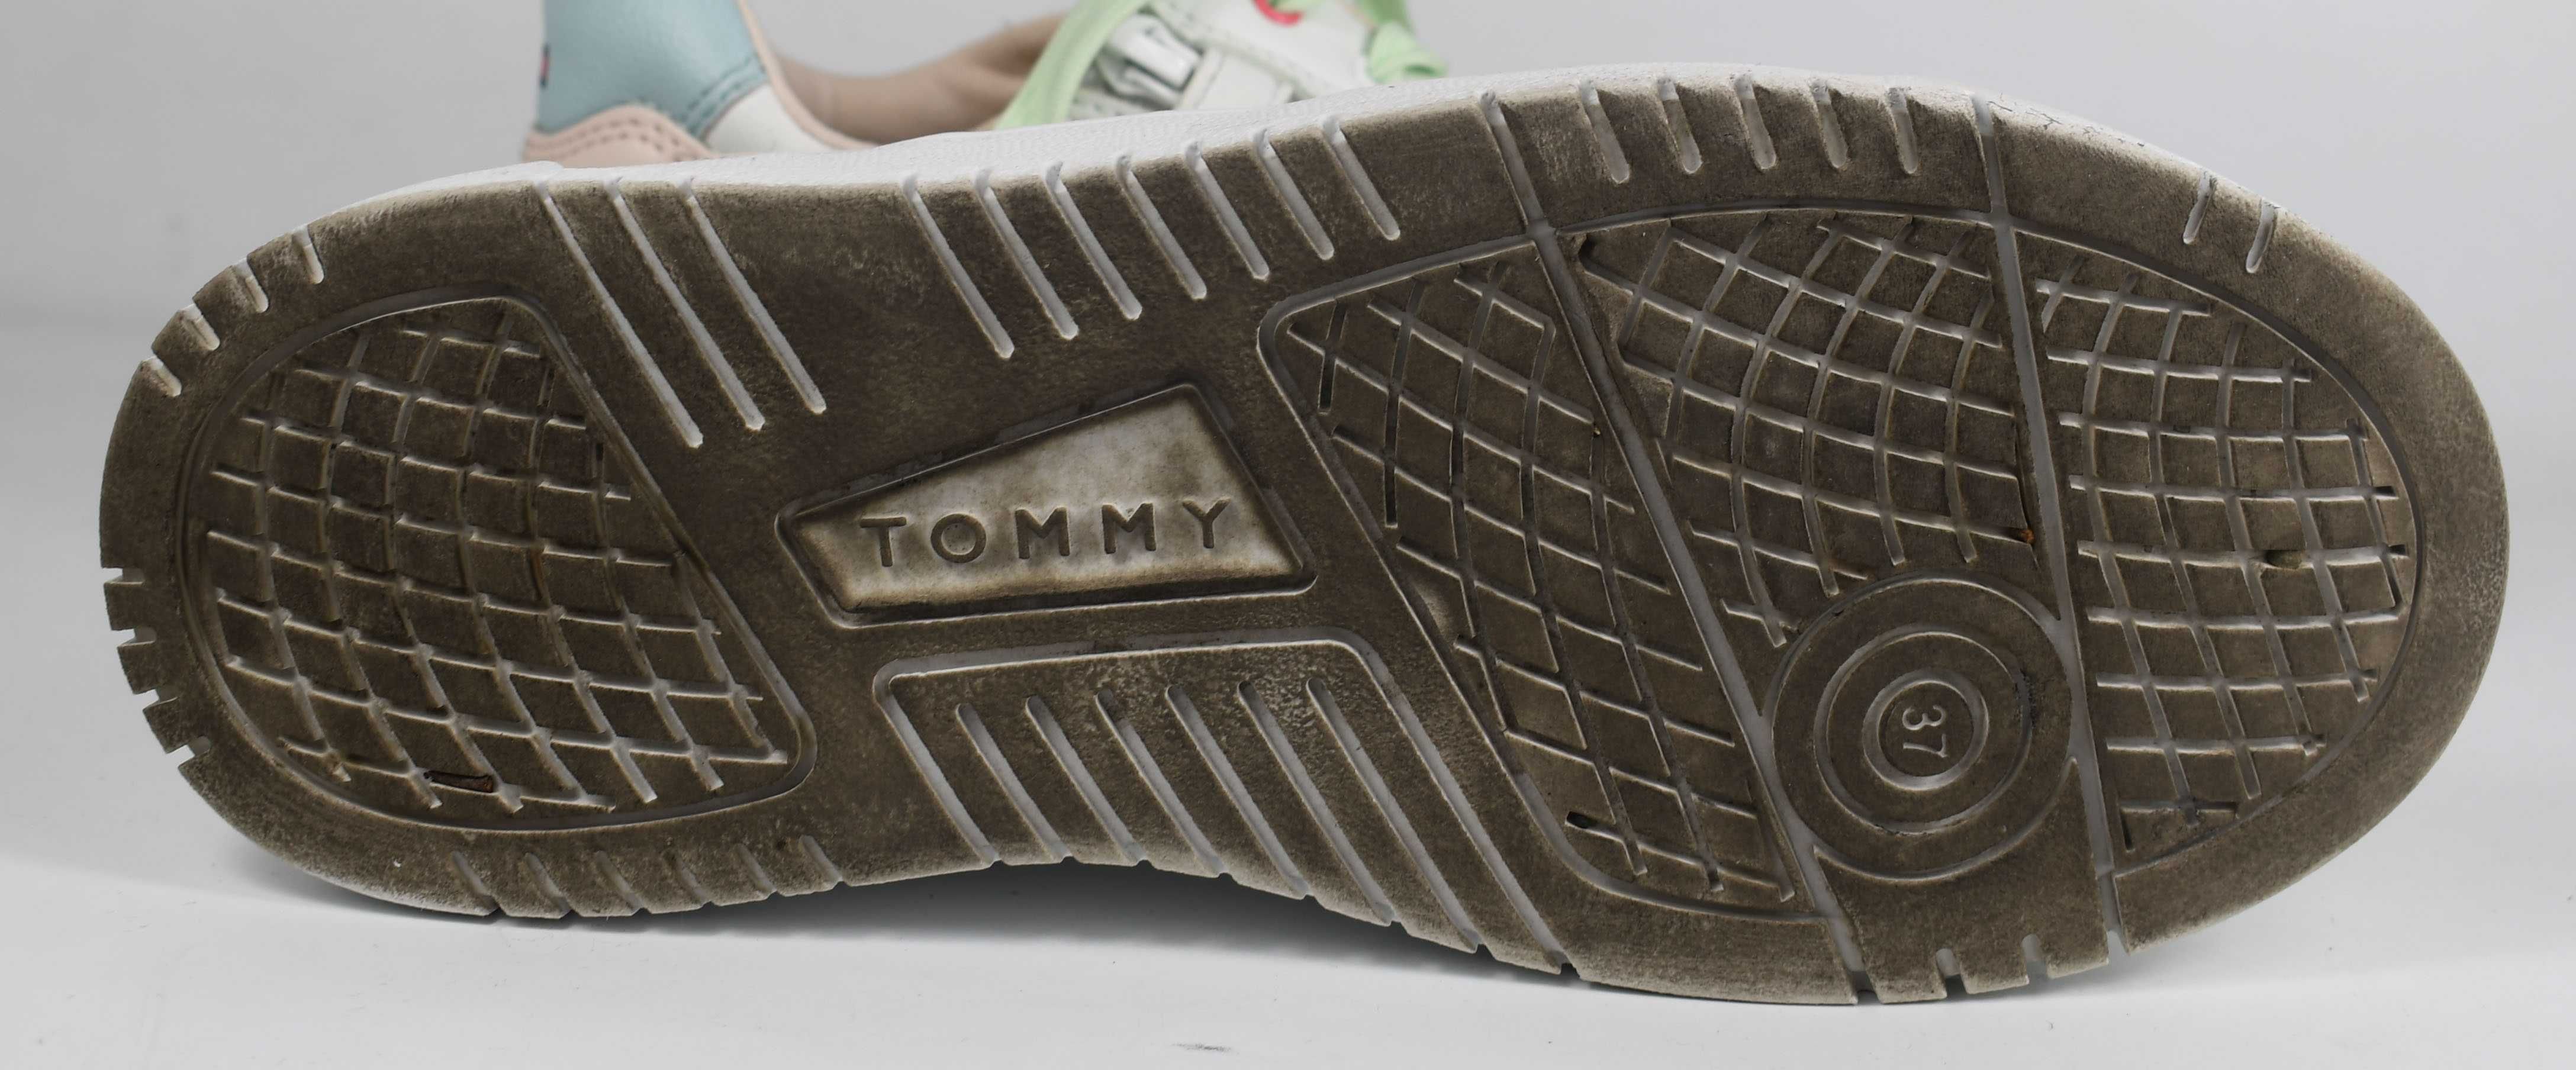 Używane sneakersy Tommy Hilfiger t3a9-32724 roz. 37